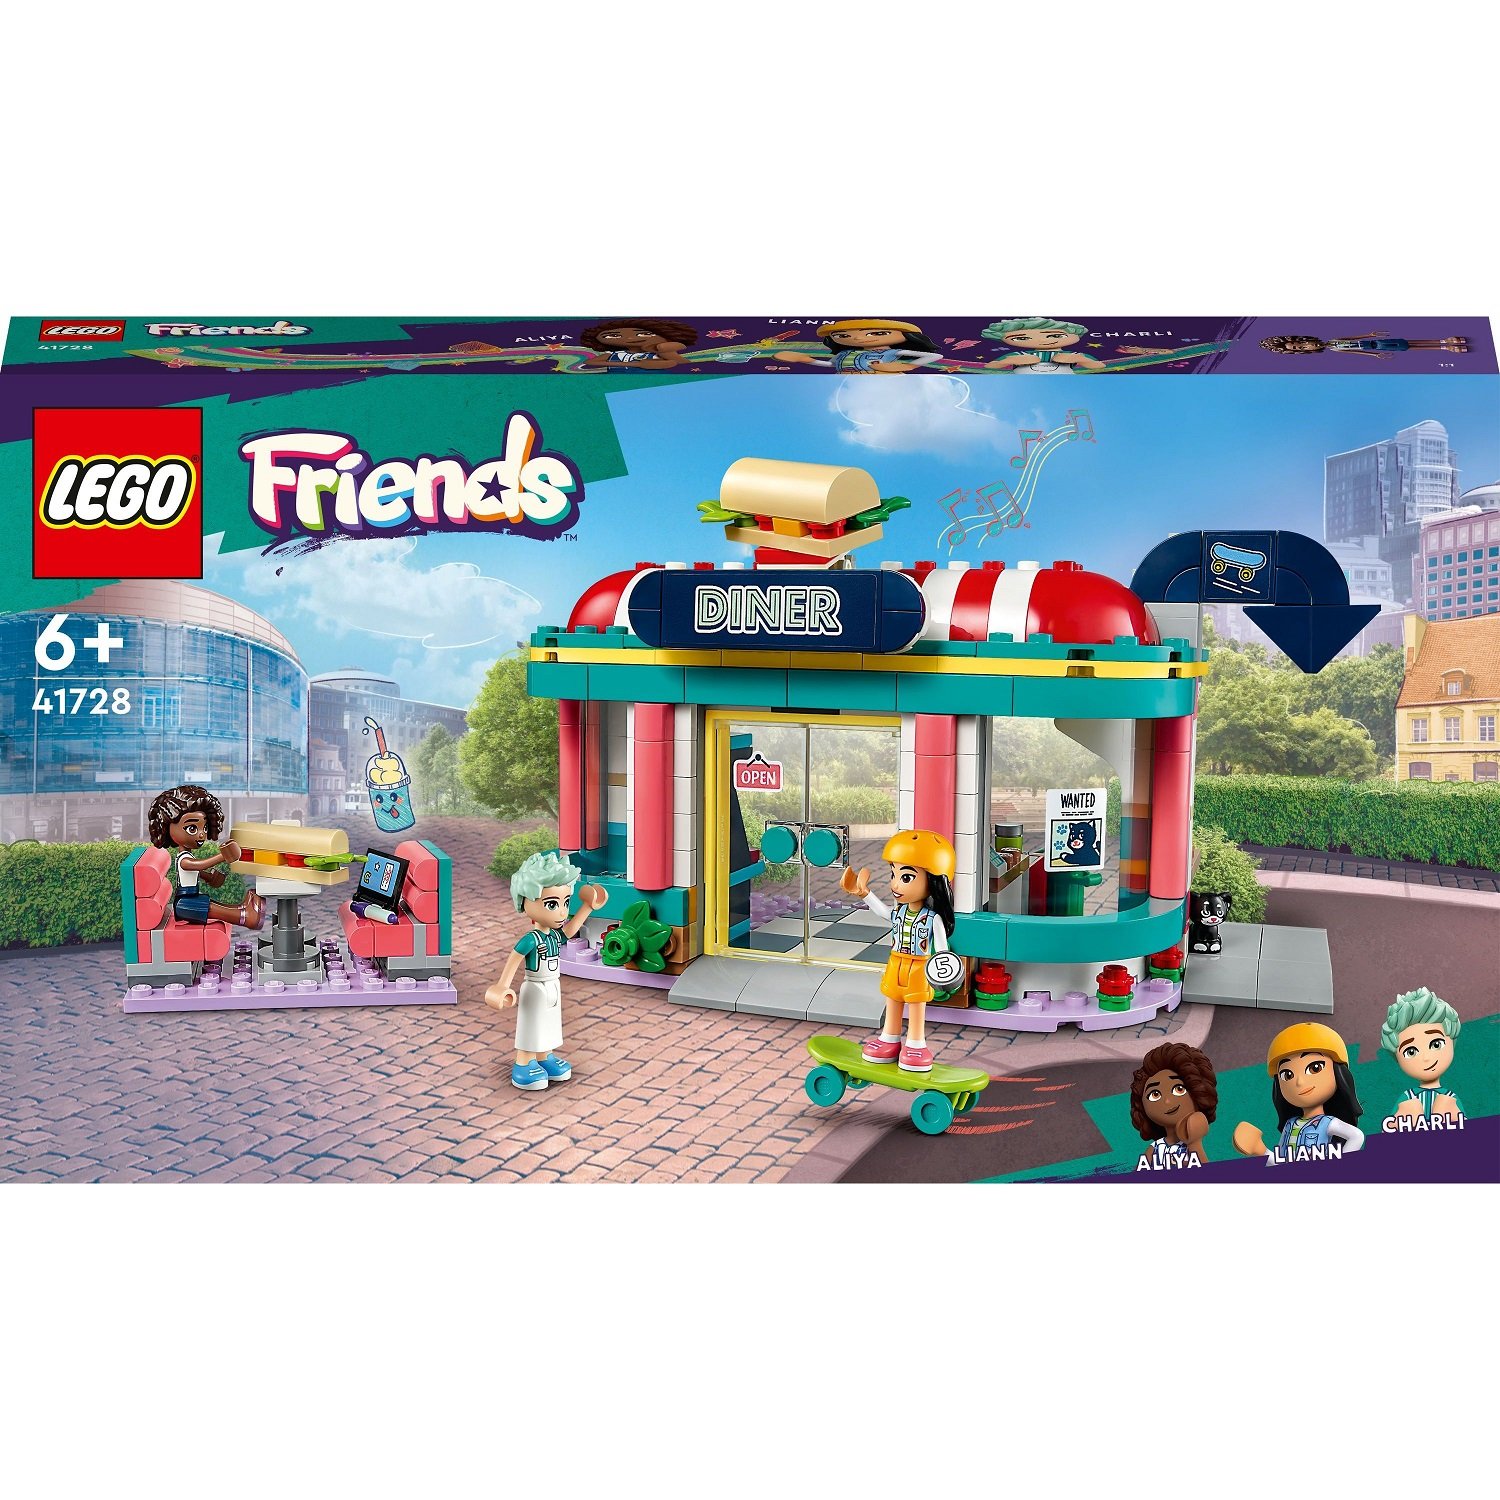 Конструктор LEGO Friends Хартлейк Сити: ресторанчик в центре города 346 деталей (41728) - фото 1